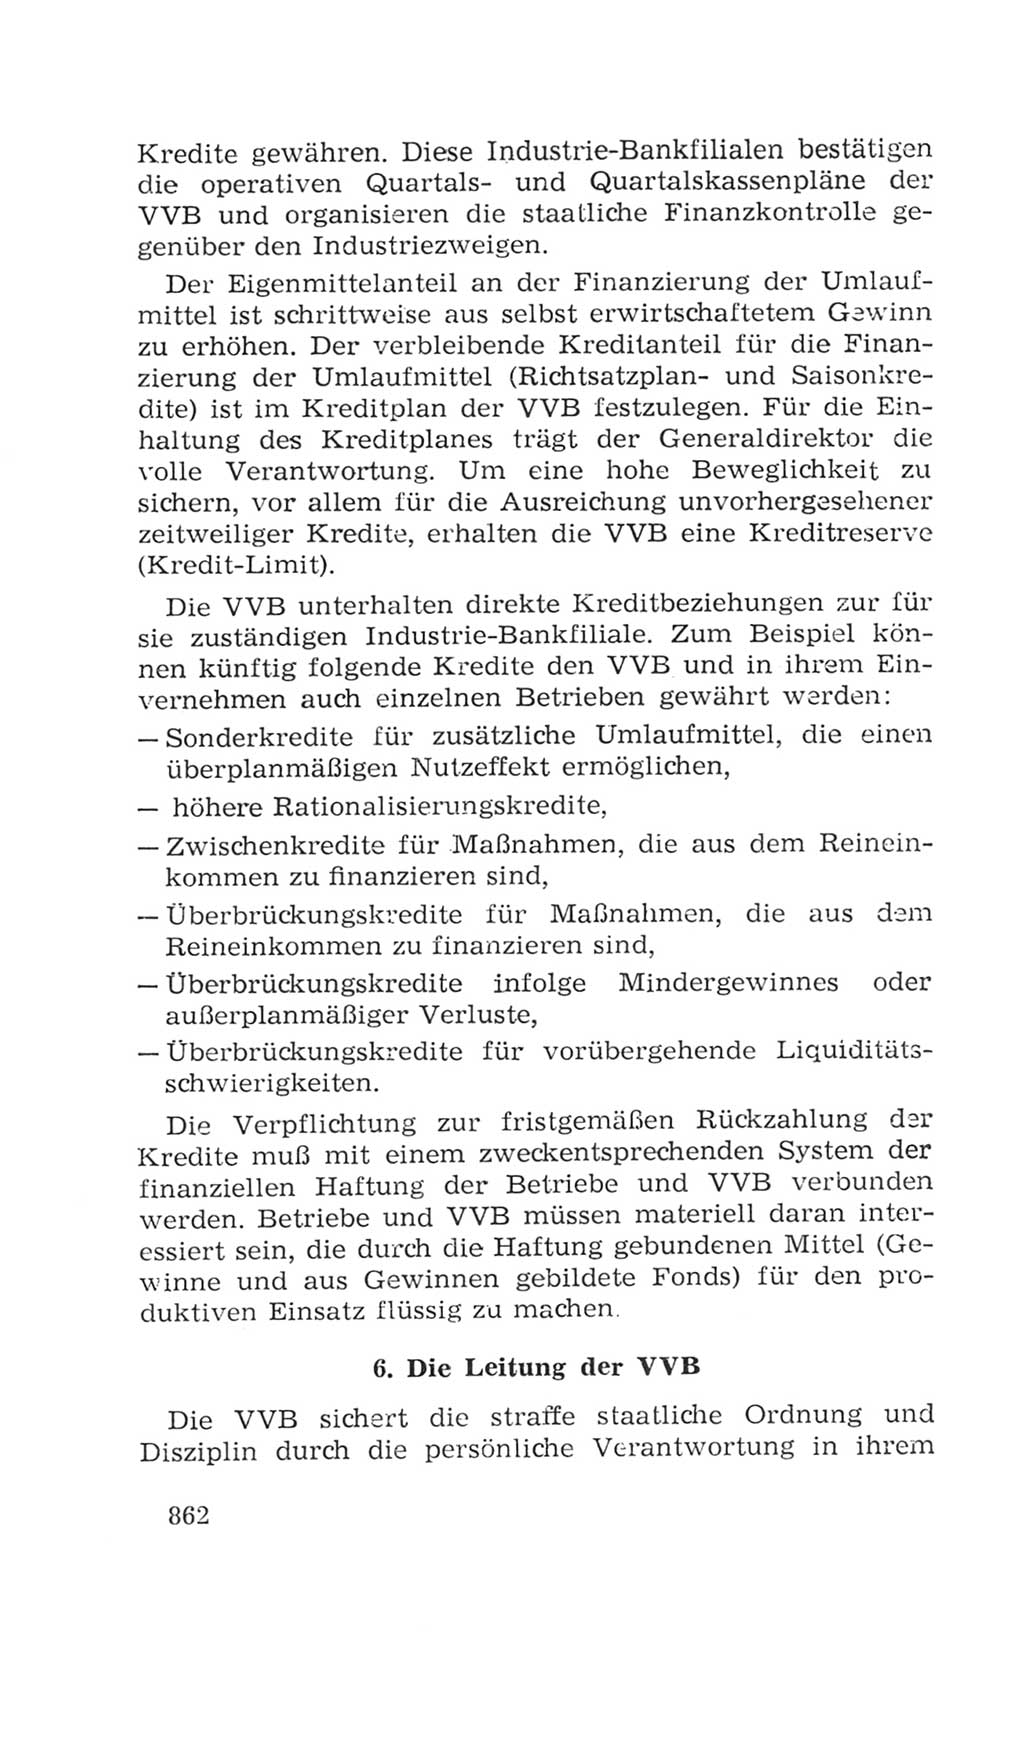 Volkskammer (VK) der Deutschen Demokratischen Republik (DDR), 4. Wahlperiode 1963-1967, Seite 862 (VK. DDR 4. WP. 1963-1967, S. 862)